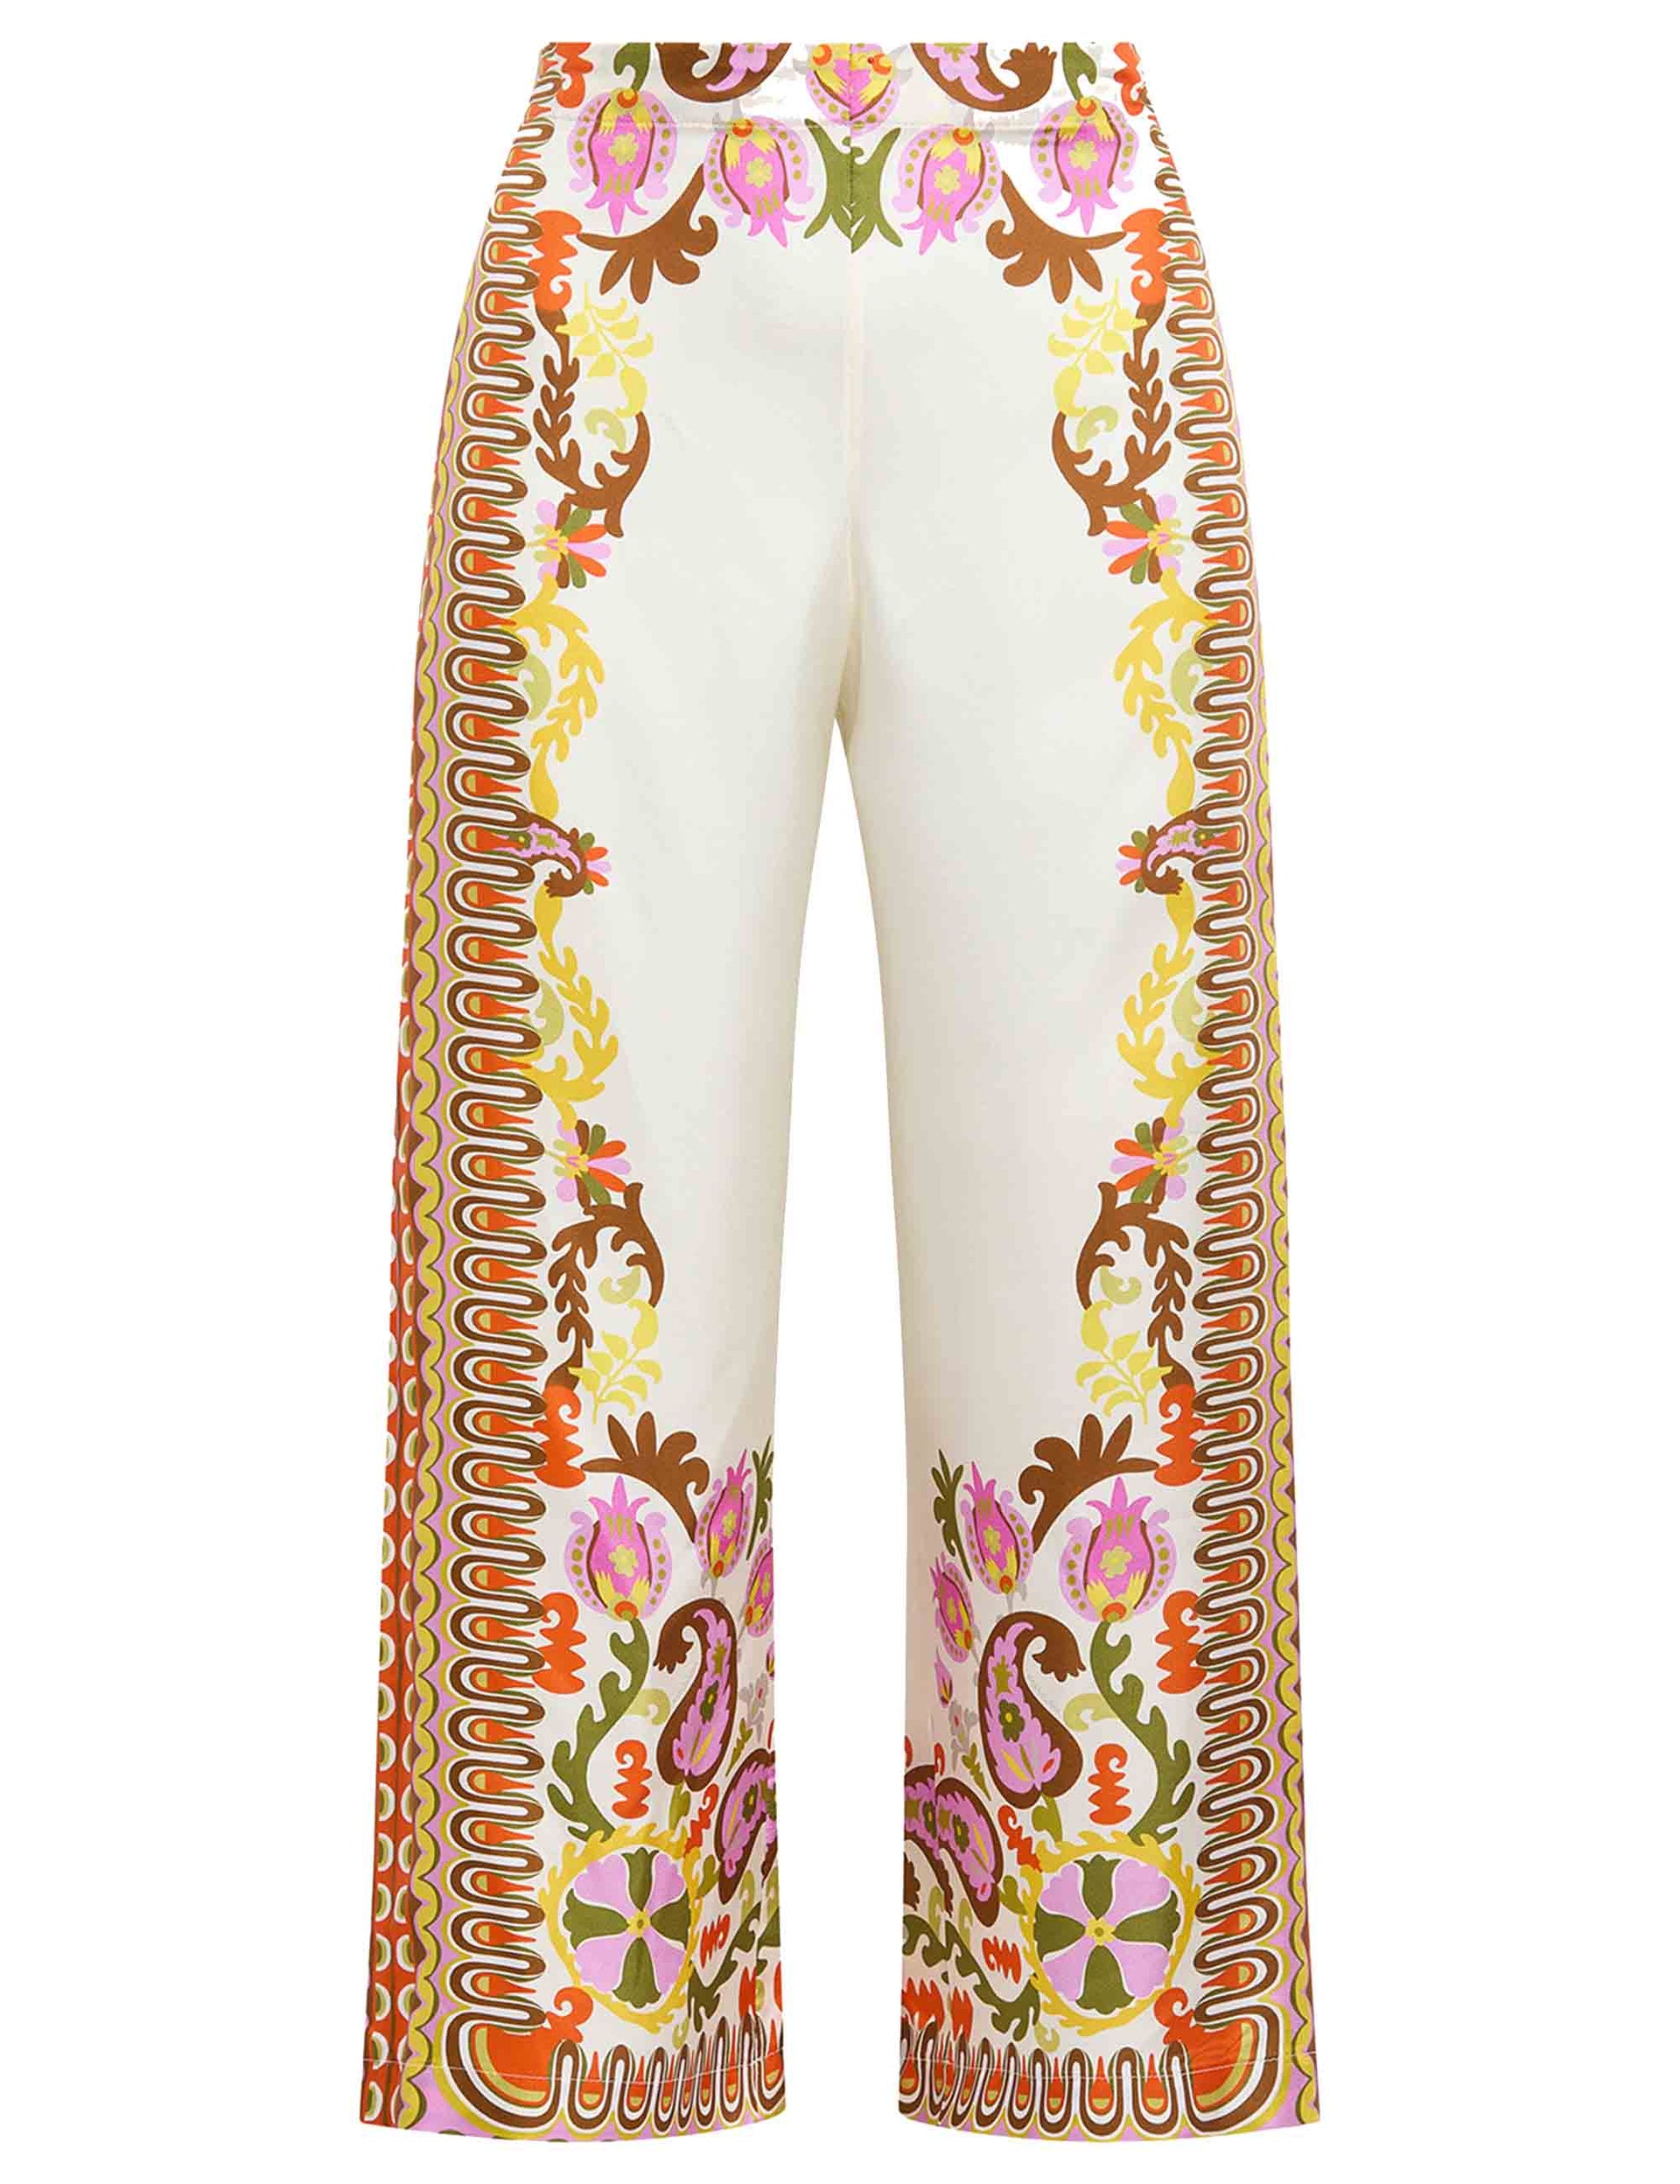 Pantaloni donna Collection Print in seta bianca stampata a gamba larga